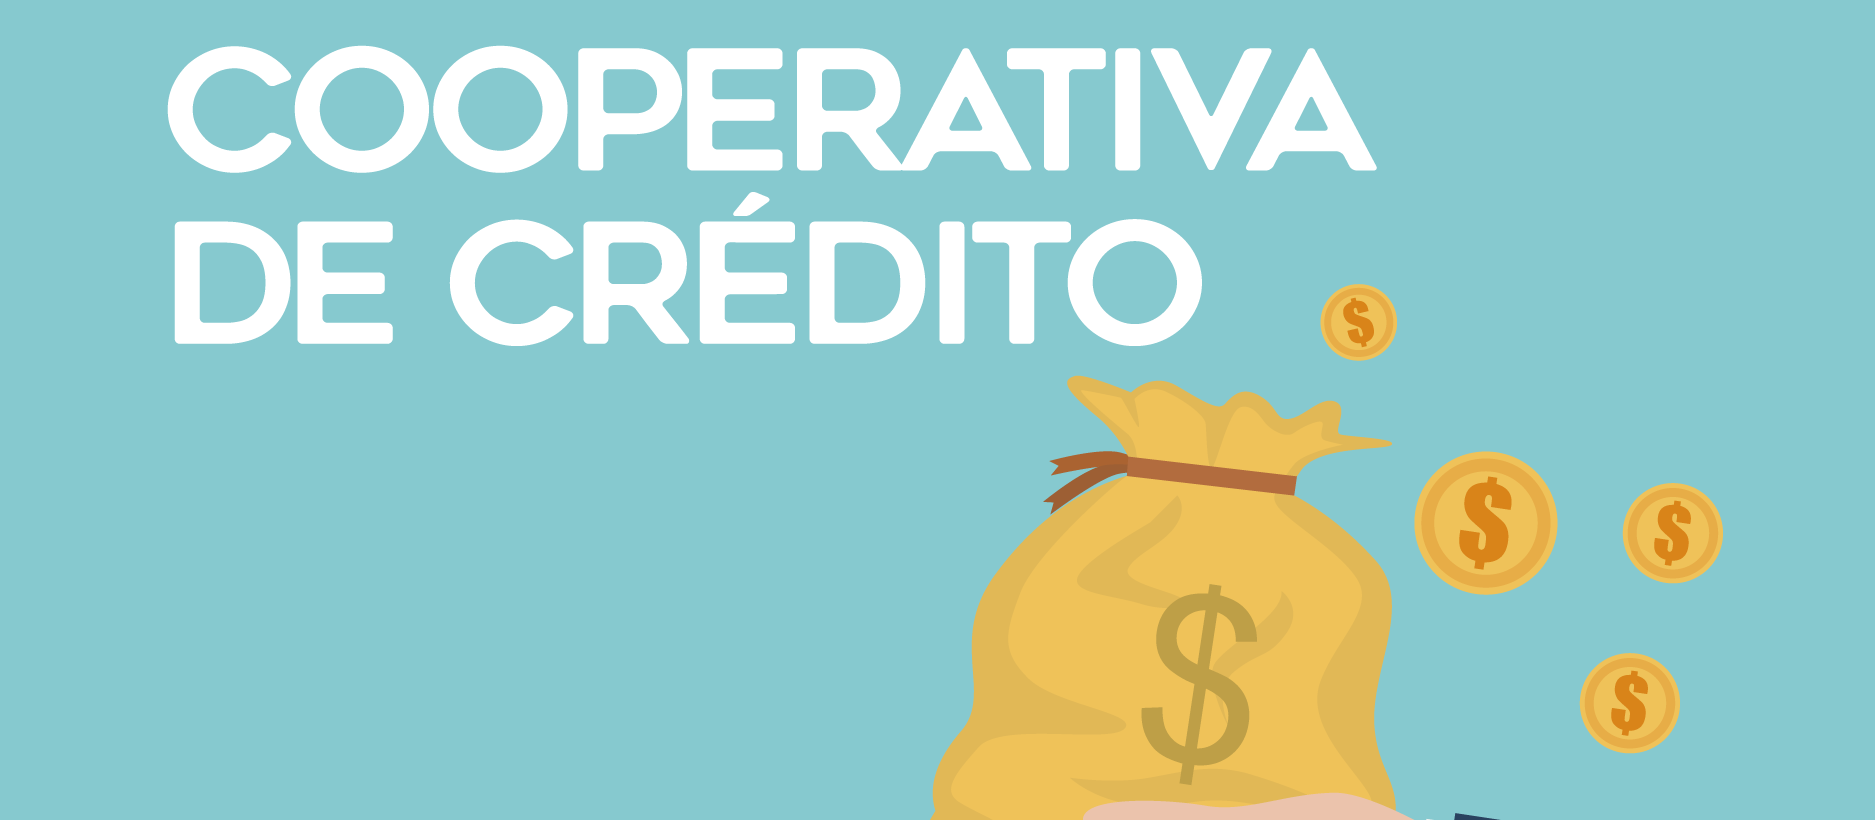 Cooperativas de crédito: em vez de clientes, há cooperados